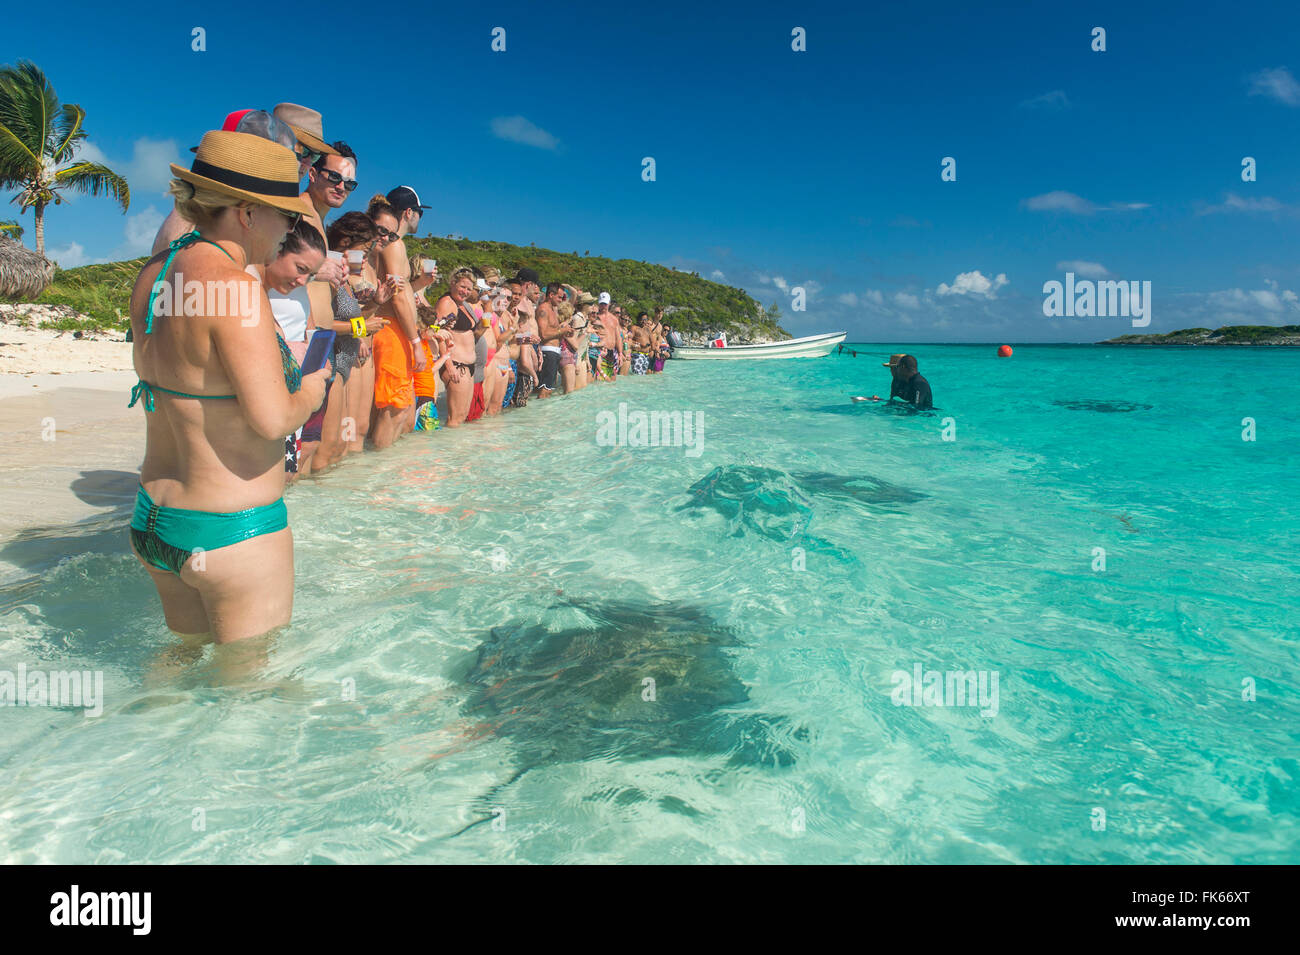 Les touristes debout sur une plage de sable blanc avec des rayons à nager dans les eaux turquoise, Exuma, Bahamas, Antilles, Caraïbes Banque D'Images